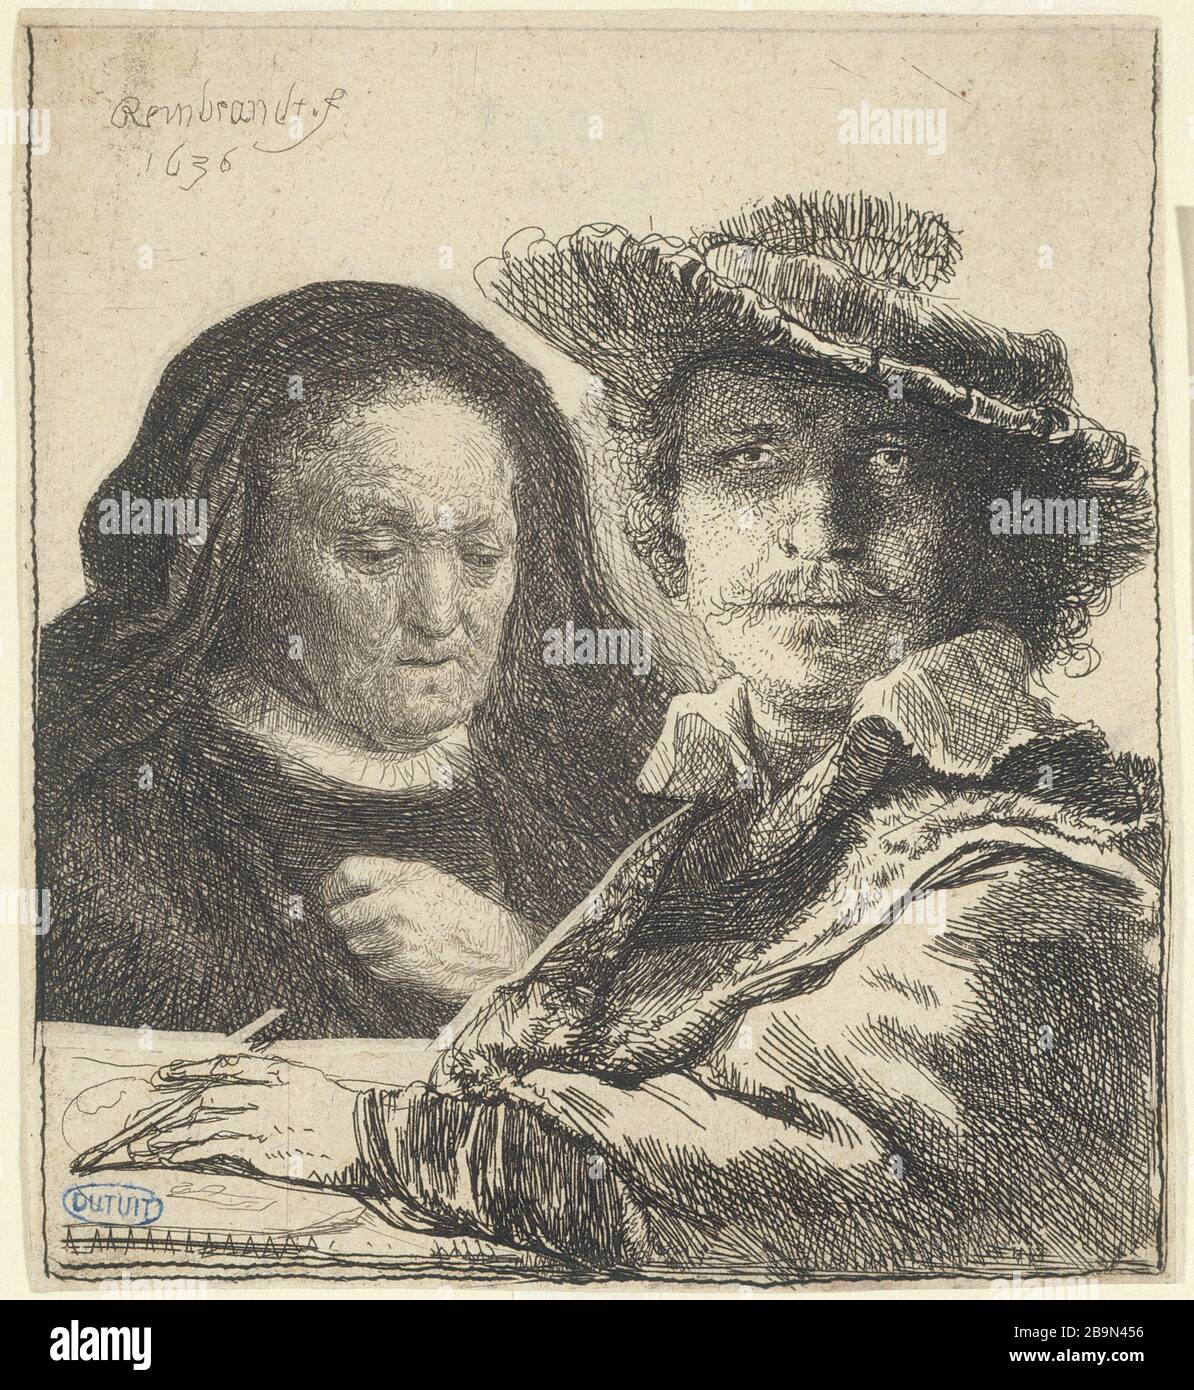 Rembrandt harmensz van rijn 1606 hi-res stock photography and